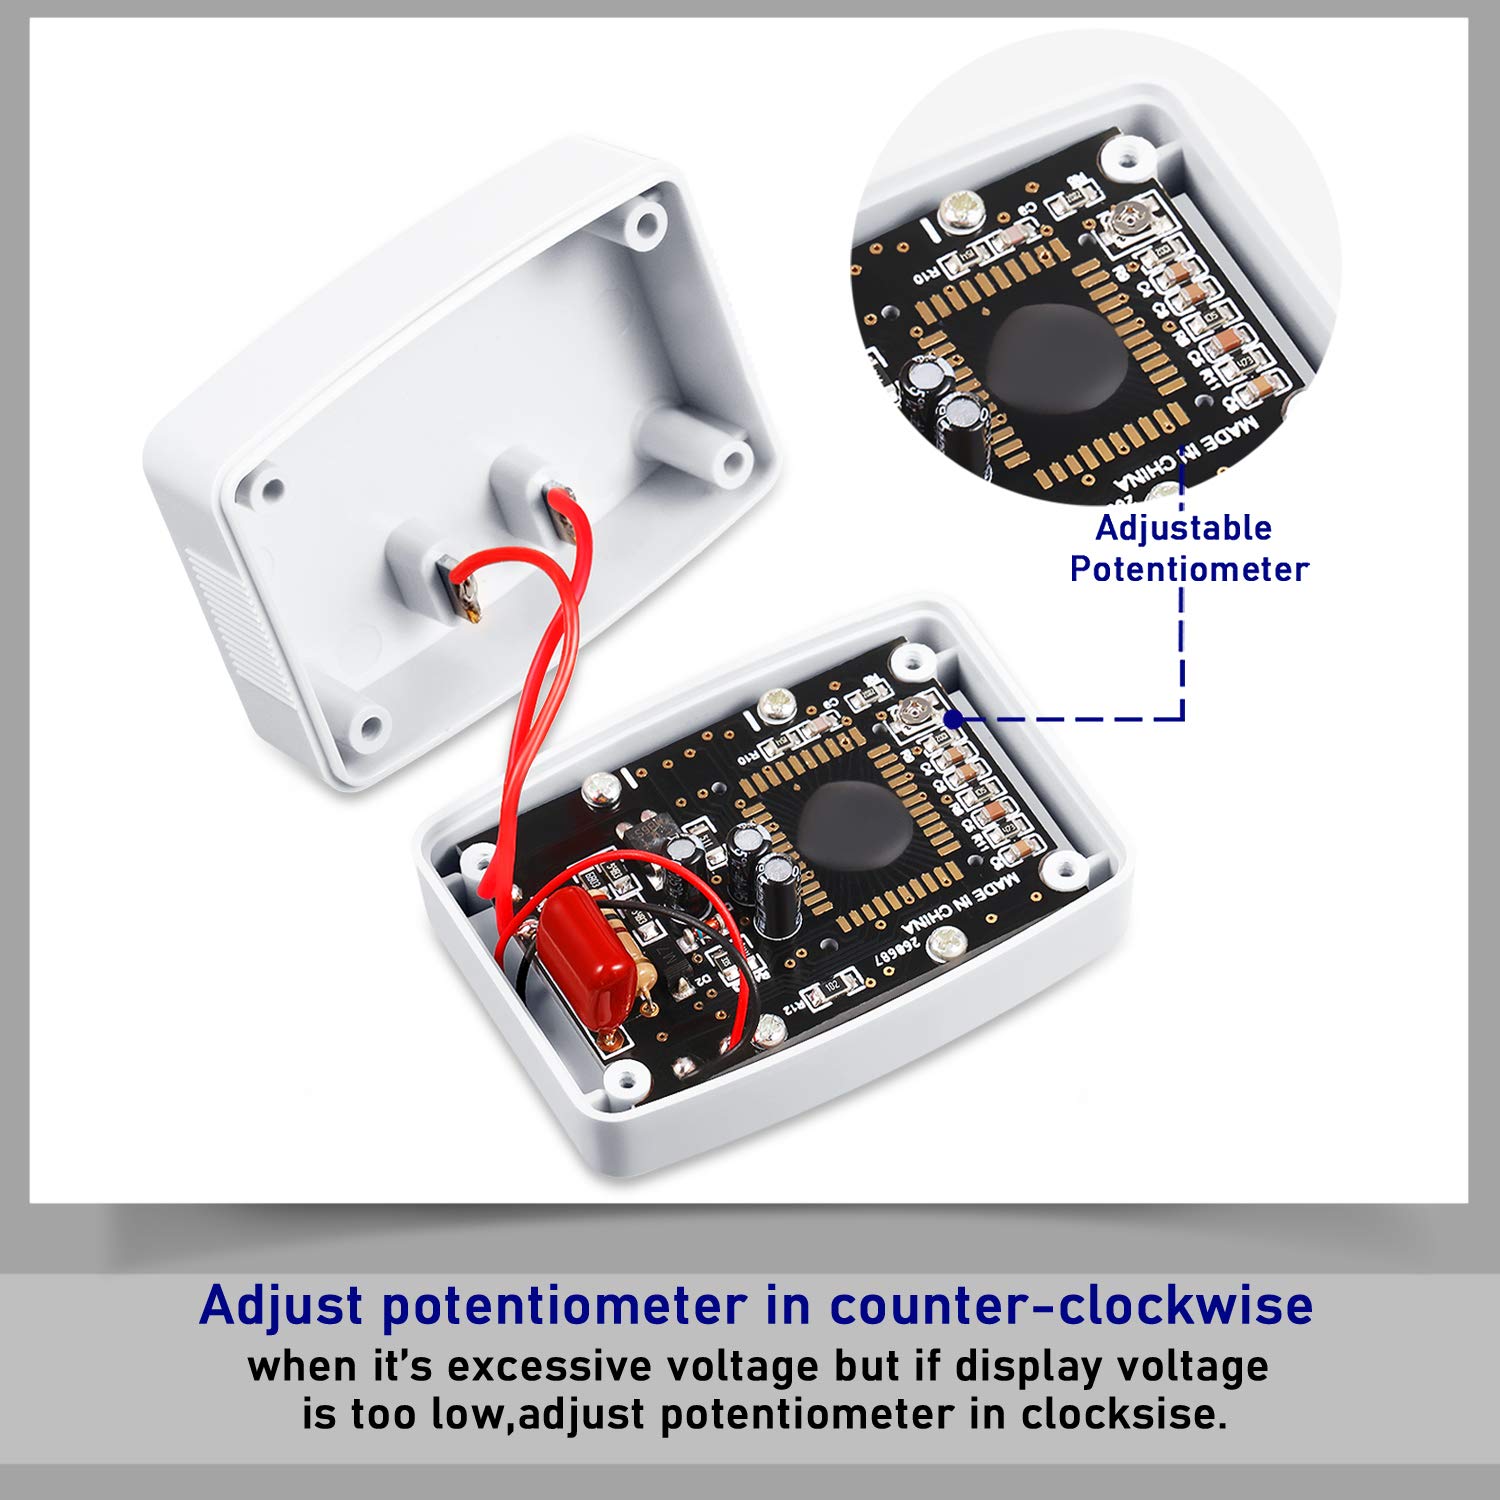 Flat US Plug AC 80-300V LCD Digital Voltmeter Voltage Measuring Monitor, AC 110V 220V Voltage Panel Power Volt Test Monitor Gauge Meter for Household Plug into Outlet to Measure Voltage (3)